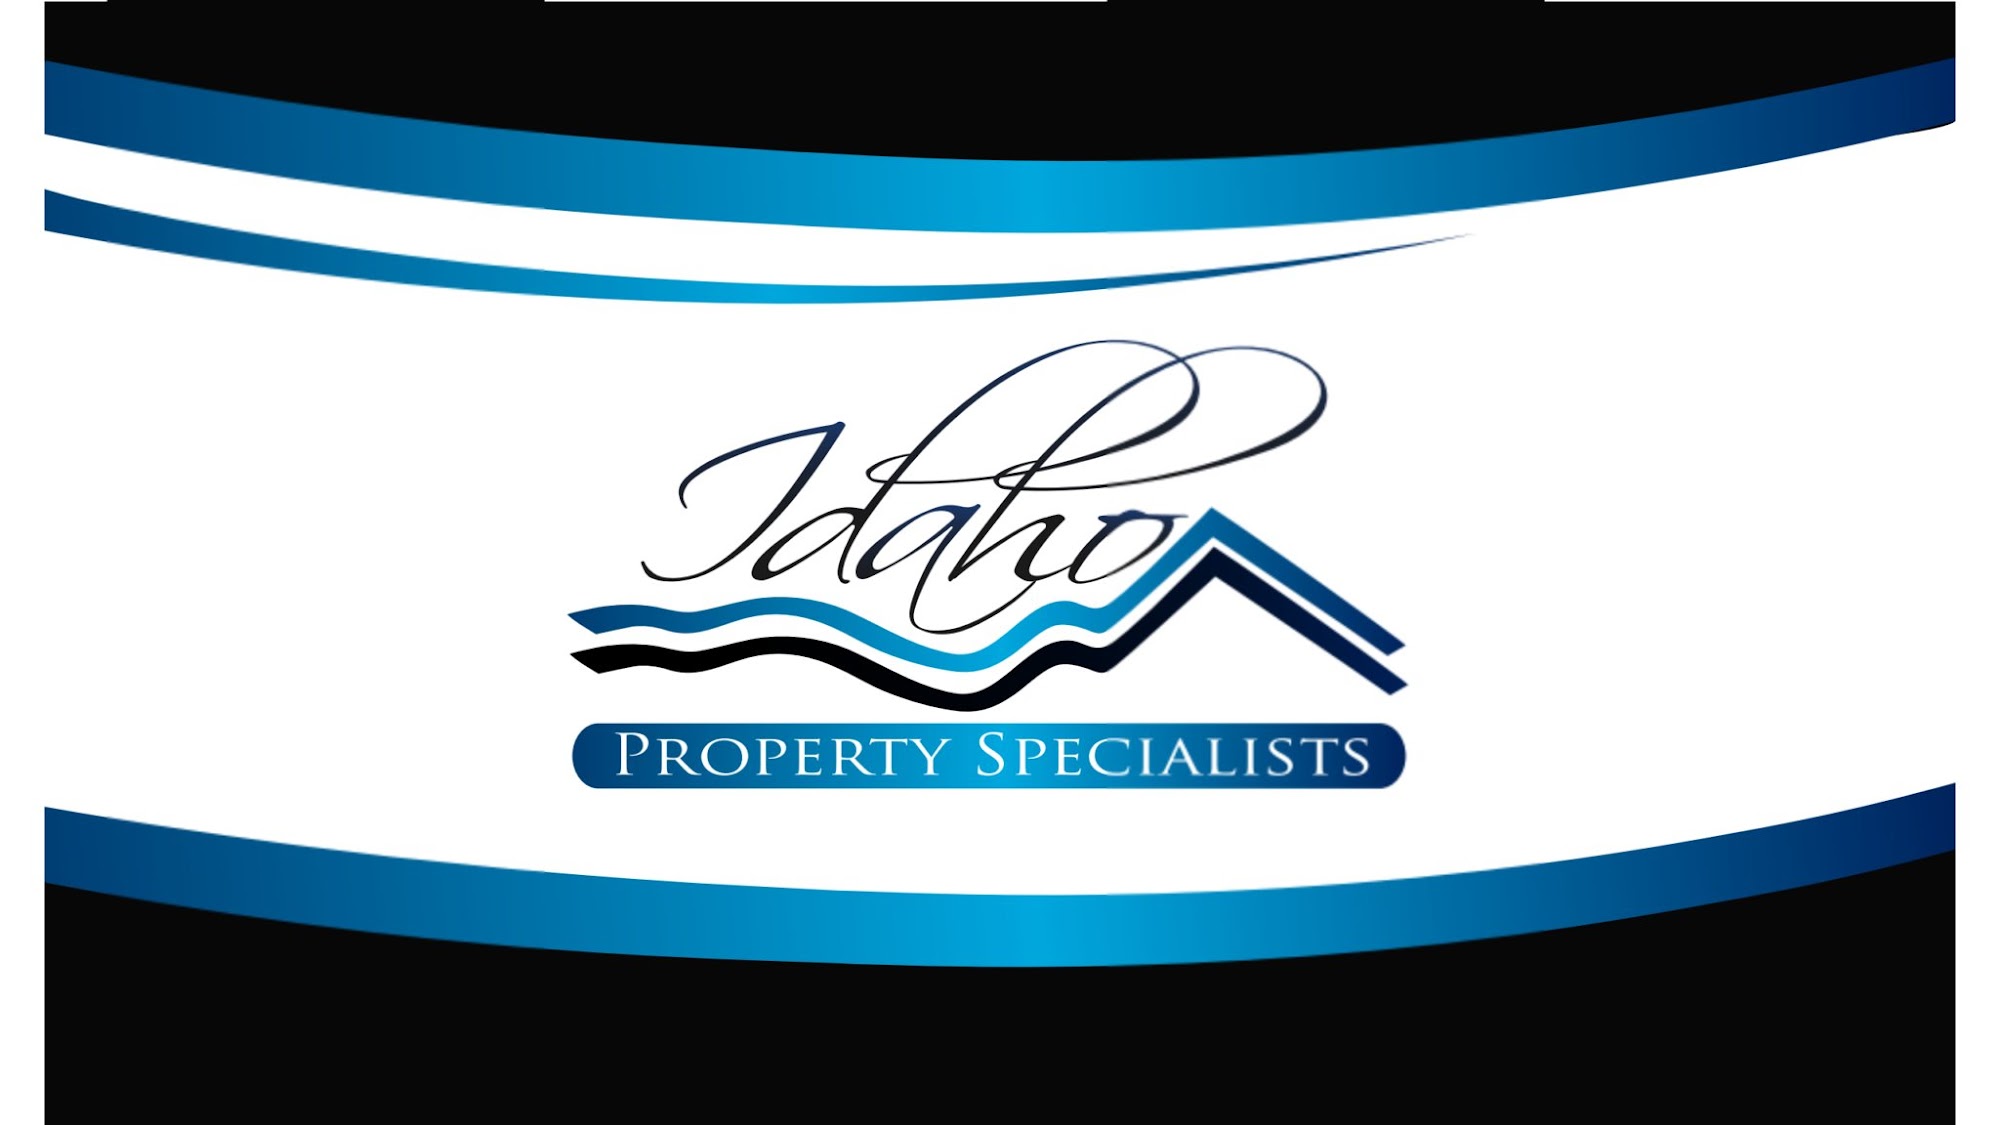 Idaho Property Specialists 2607 Rome Ave, Fruitland Idaho 83619